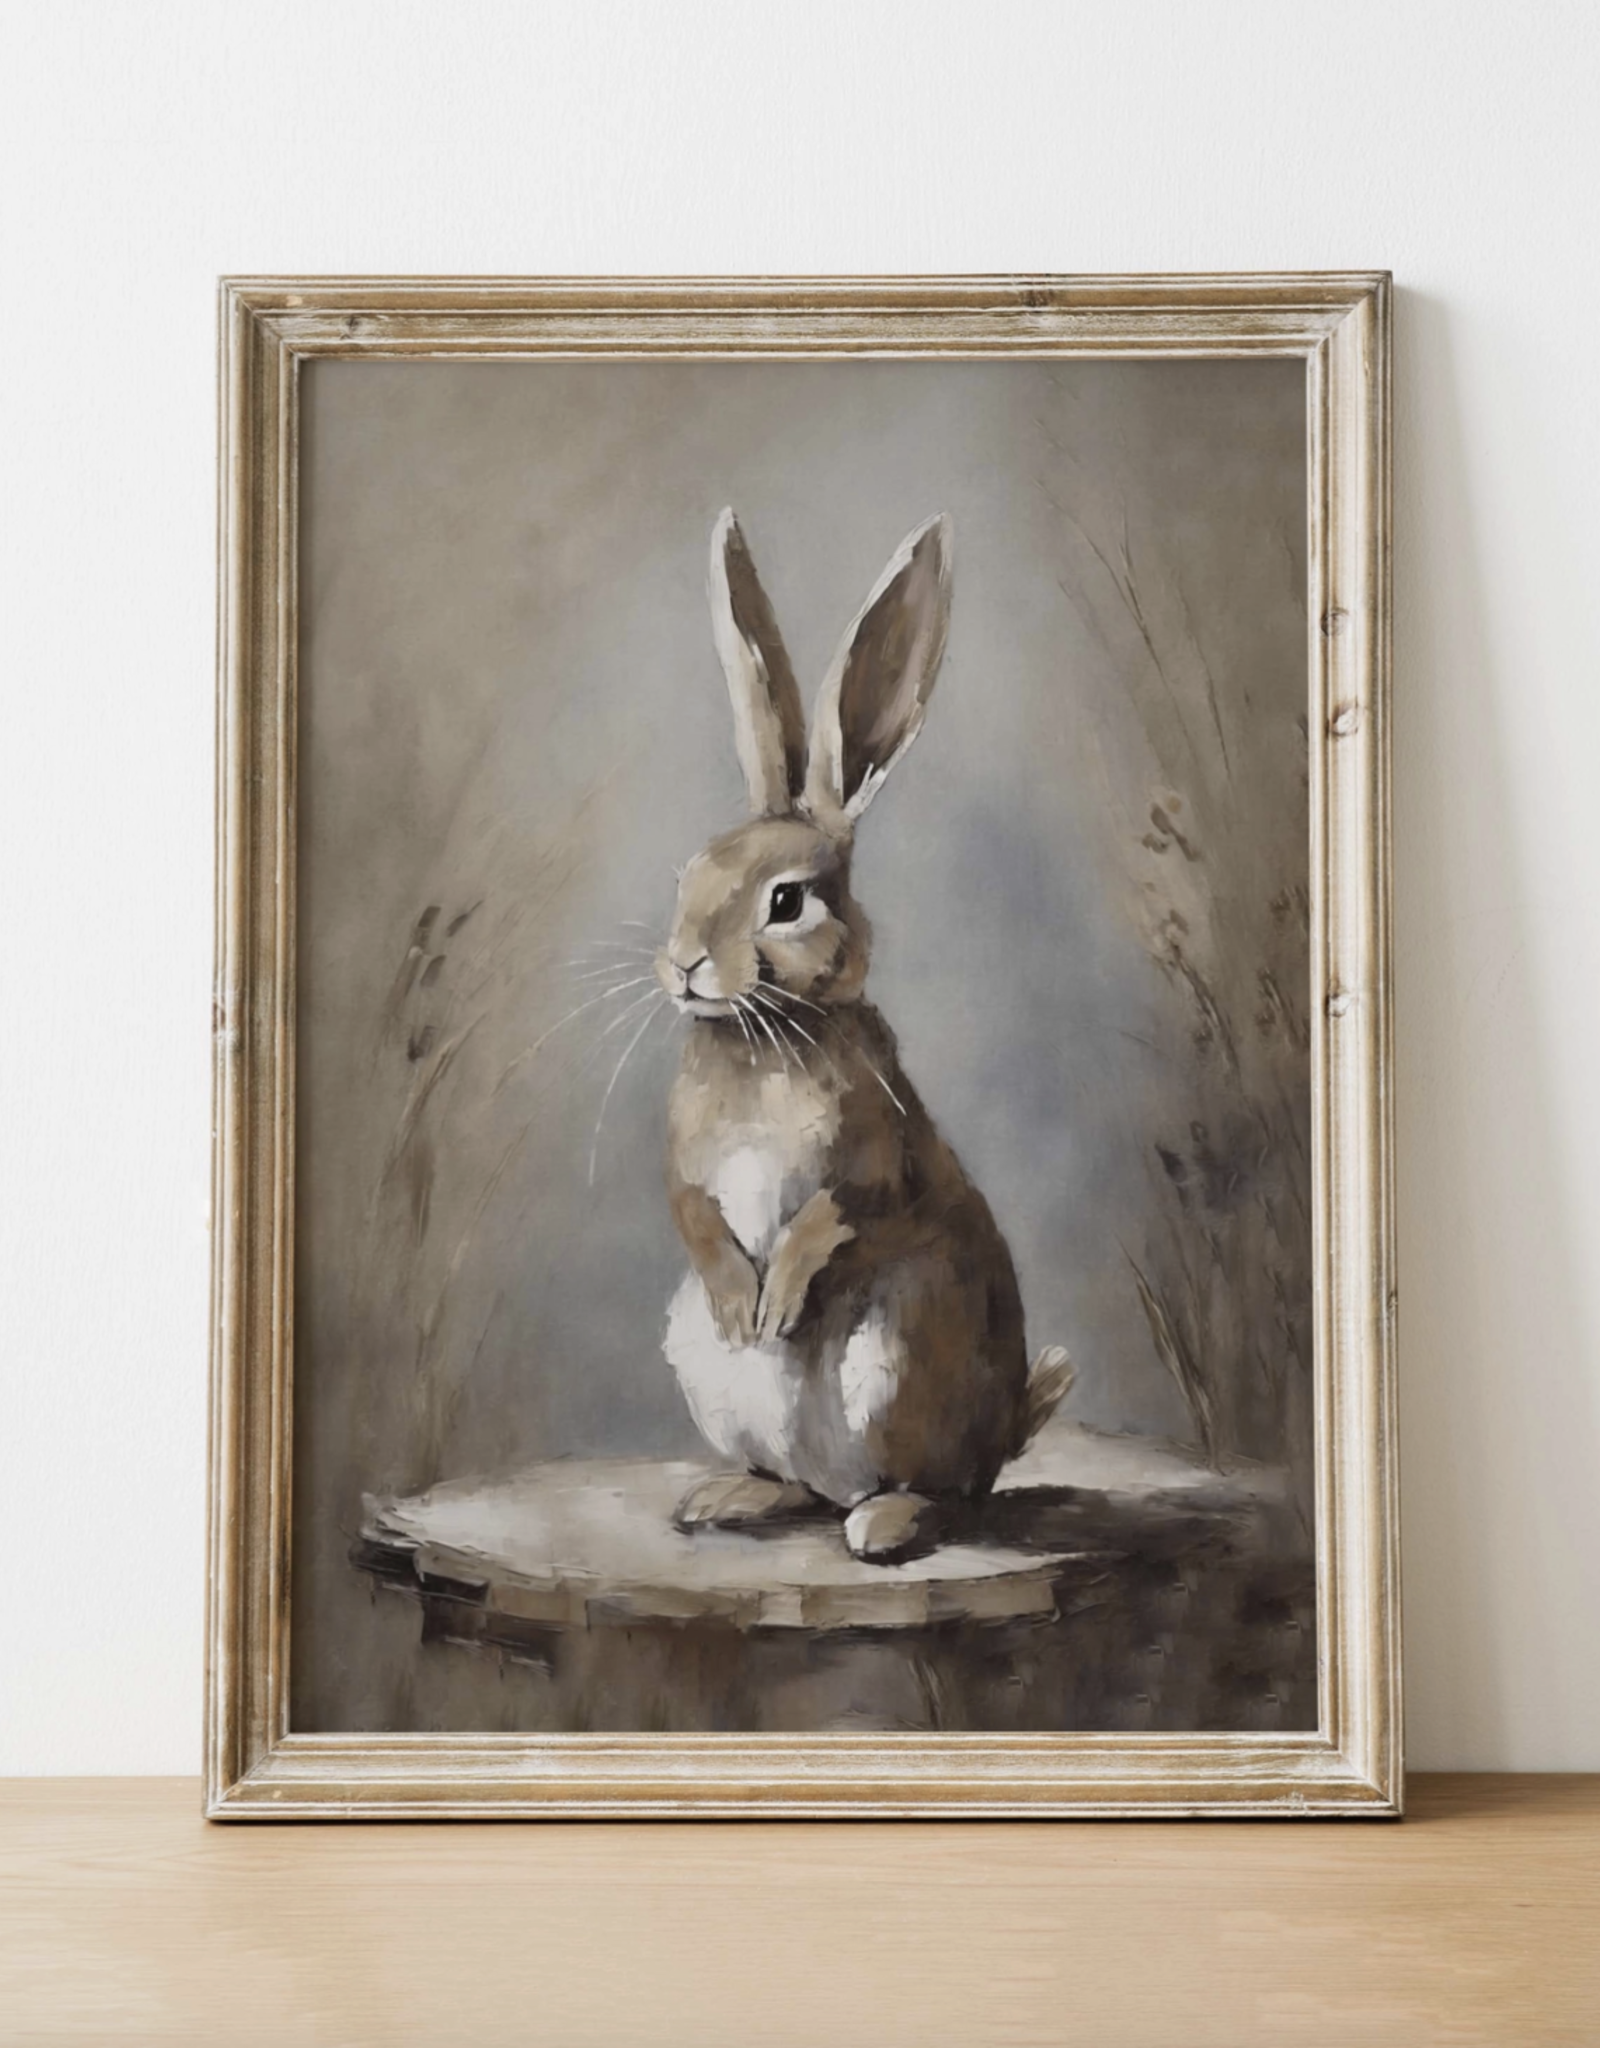 Oak Framed Rabbit Vintage Art Print, 11X14